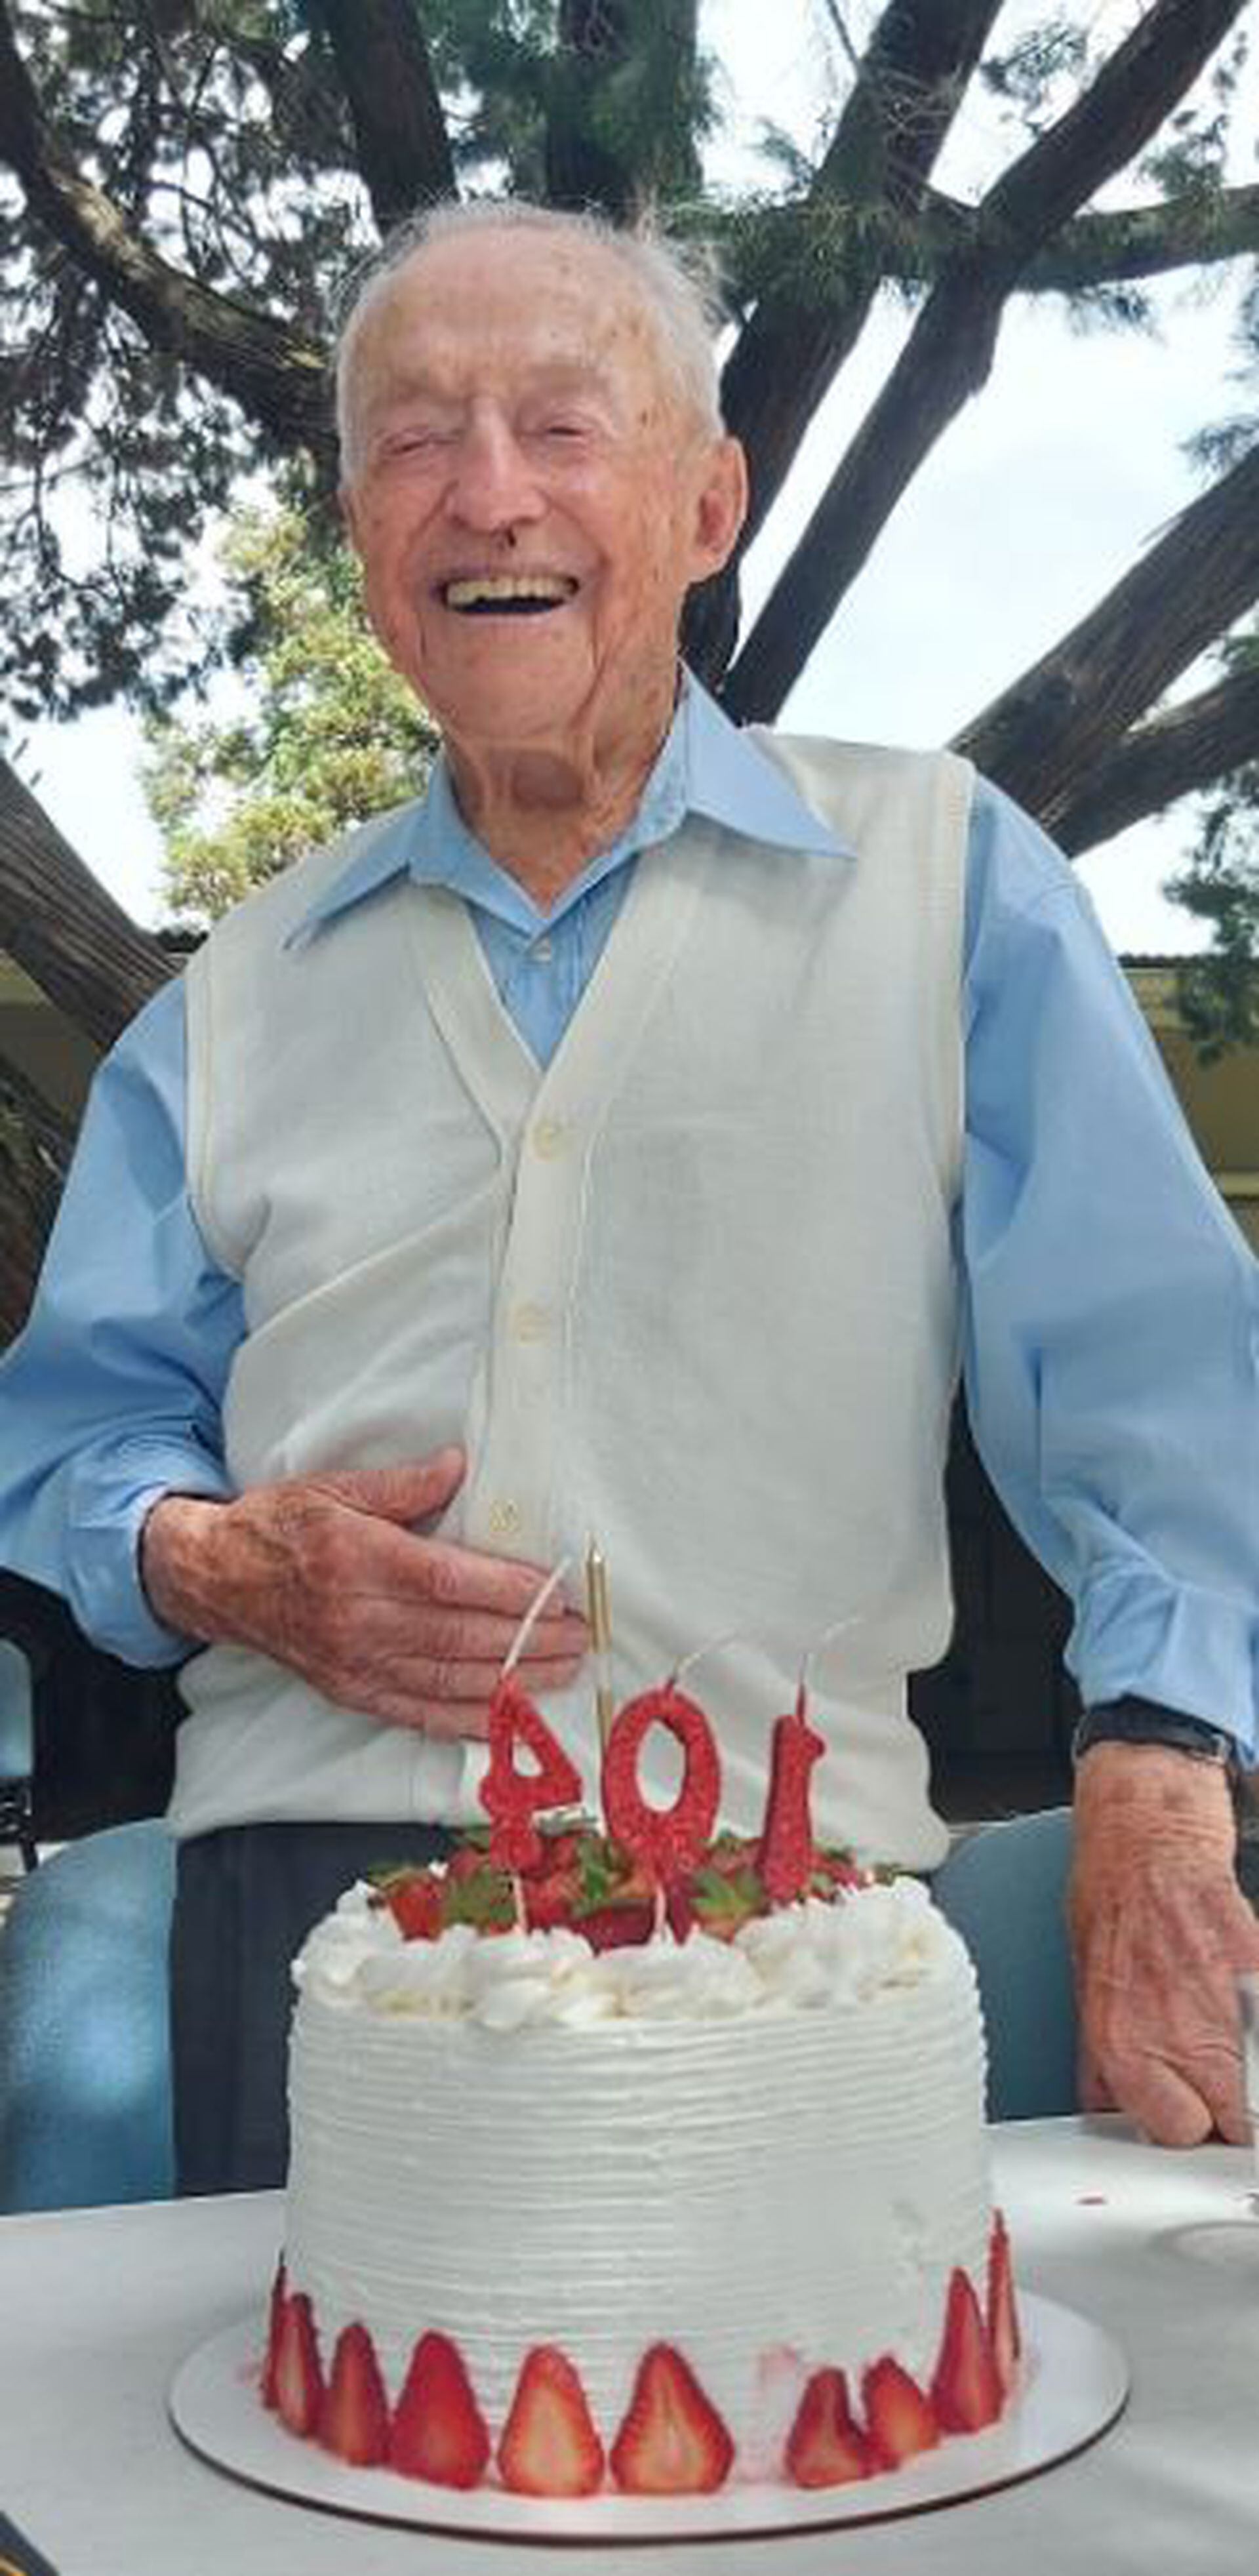 El 20 de octubre, el piloto de aviación Ronald David Scott cumplió 104 años y festejó junto a camaradas en Zárate, provincia de Buenos Aires